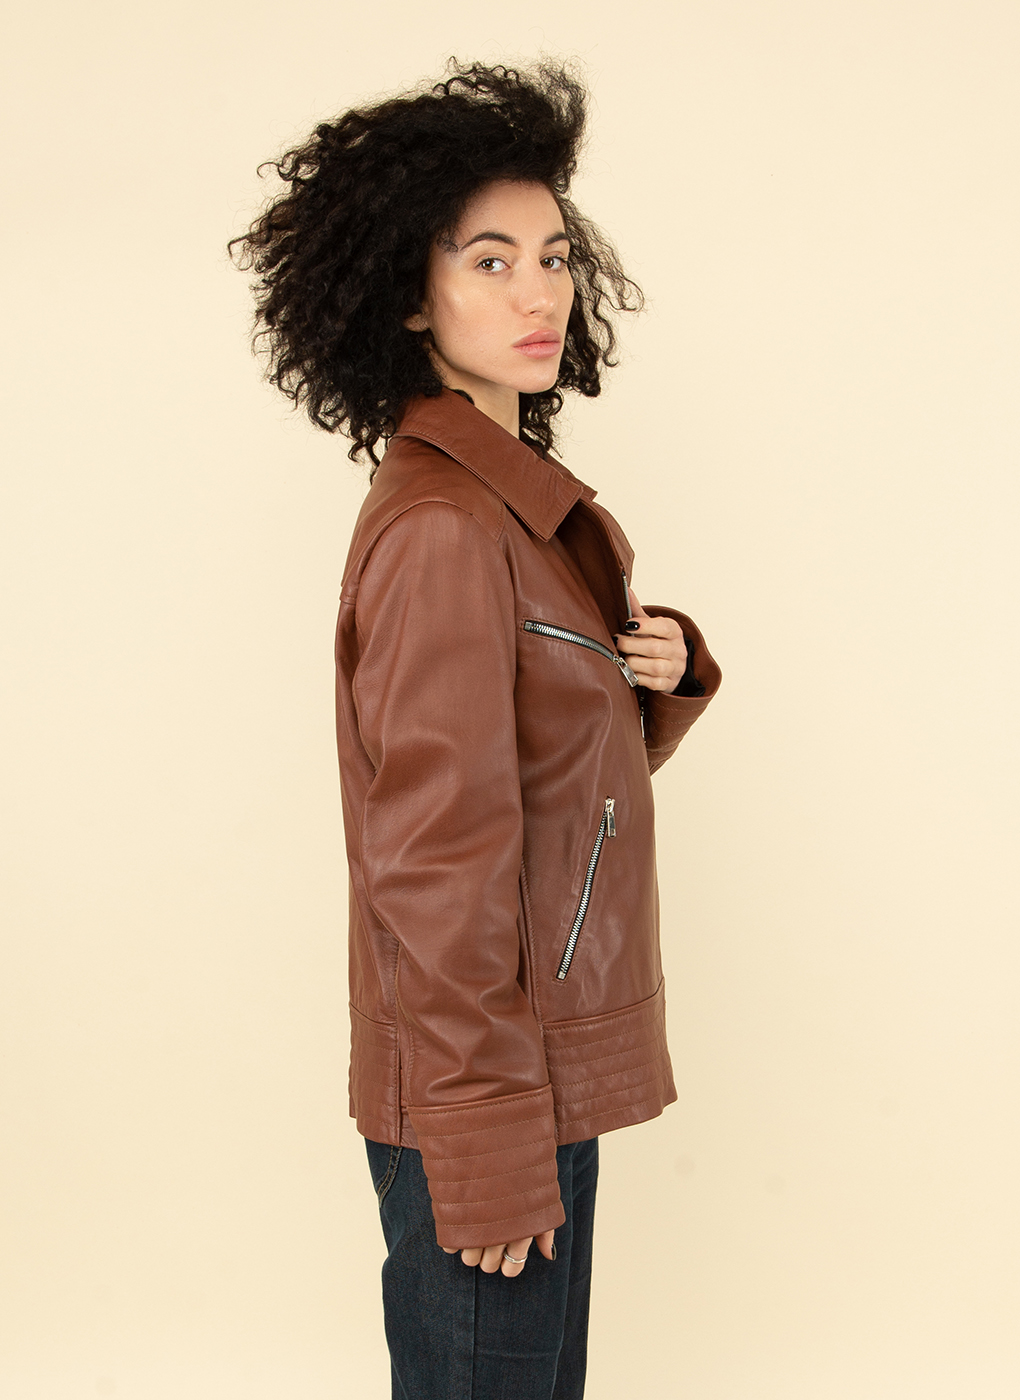 Кожаная куртка женская Каляев 53744 коричневая 52 RU